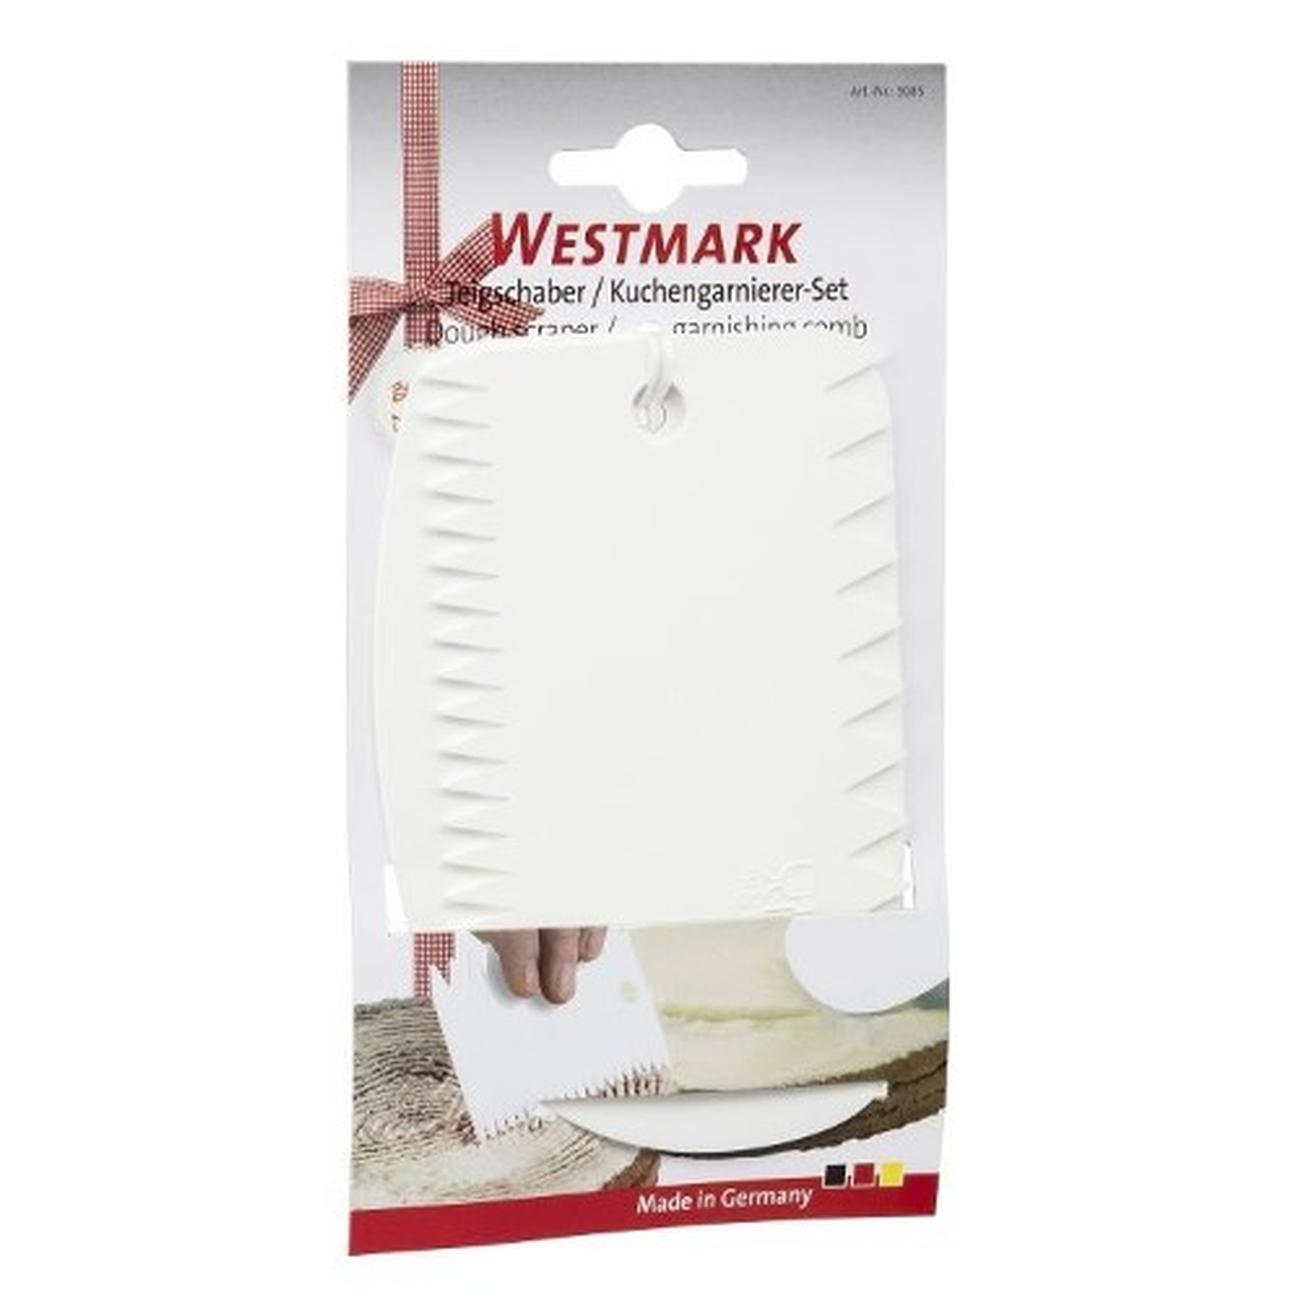 westmark-dough-scraper-and-comb - Westmark Dough Scraper & Garnish Comb